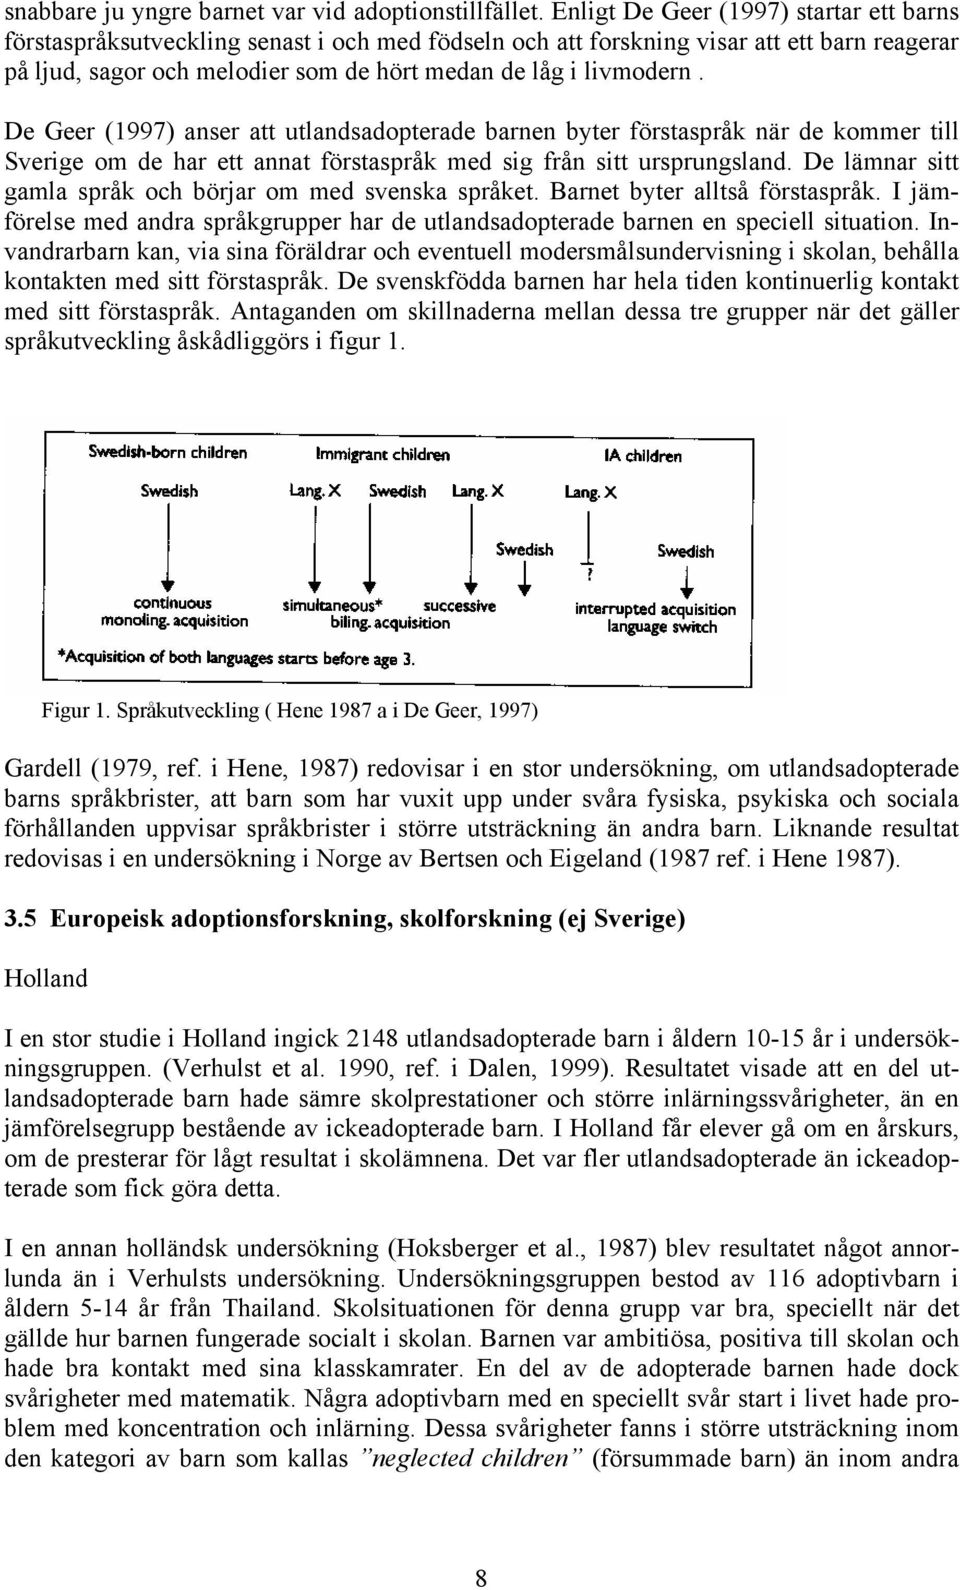 De Geer (1997) anser att utlandsadopterade barnen byter förstaspråk när de kommer till Sverige om de har ett annat förstaspråk med sig från sitt ursprungsland.